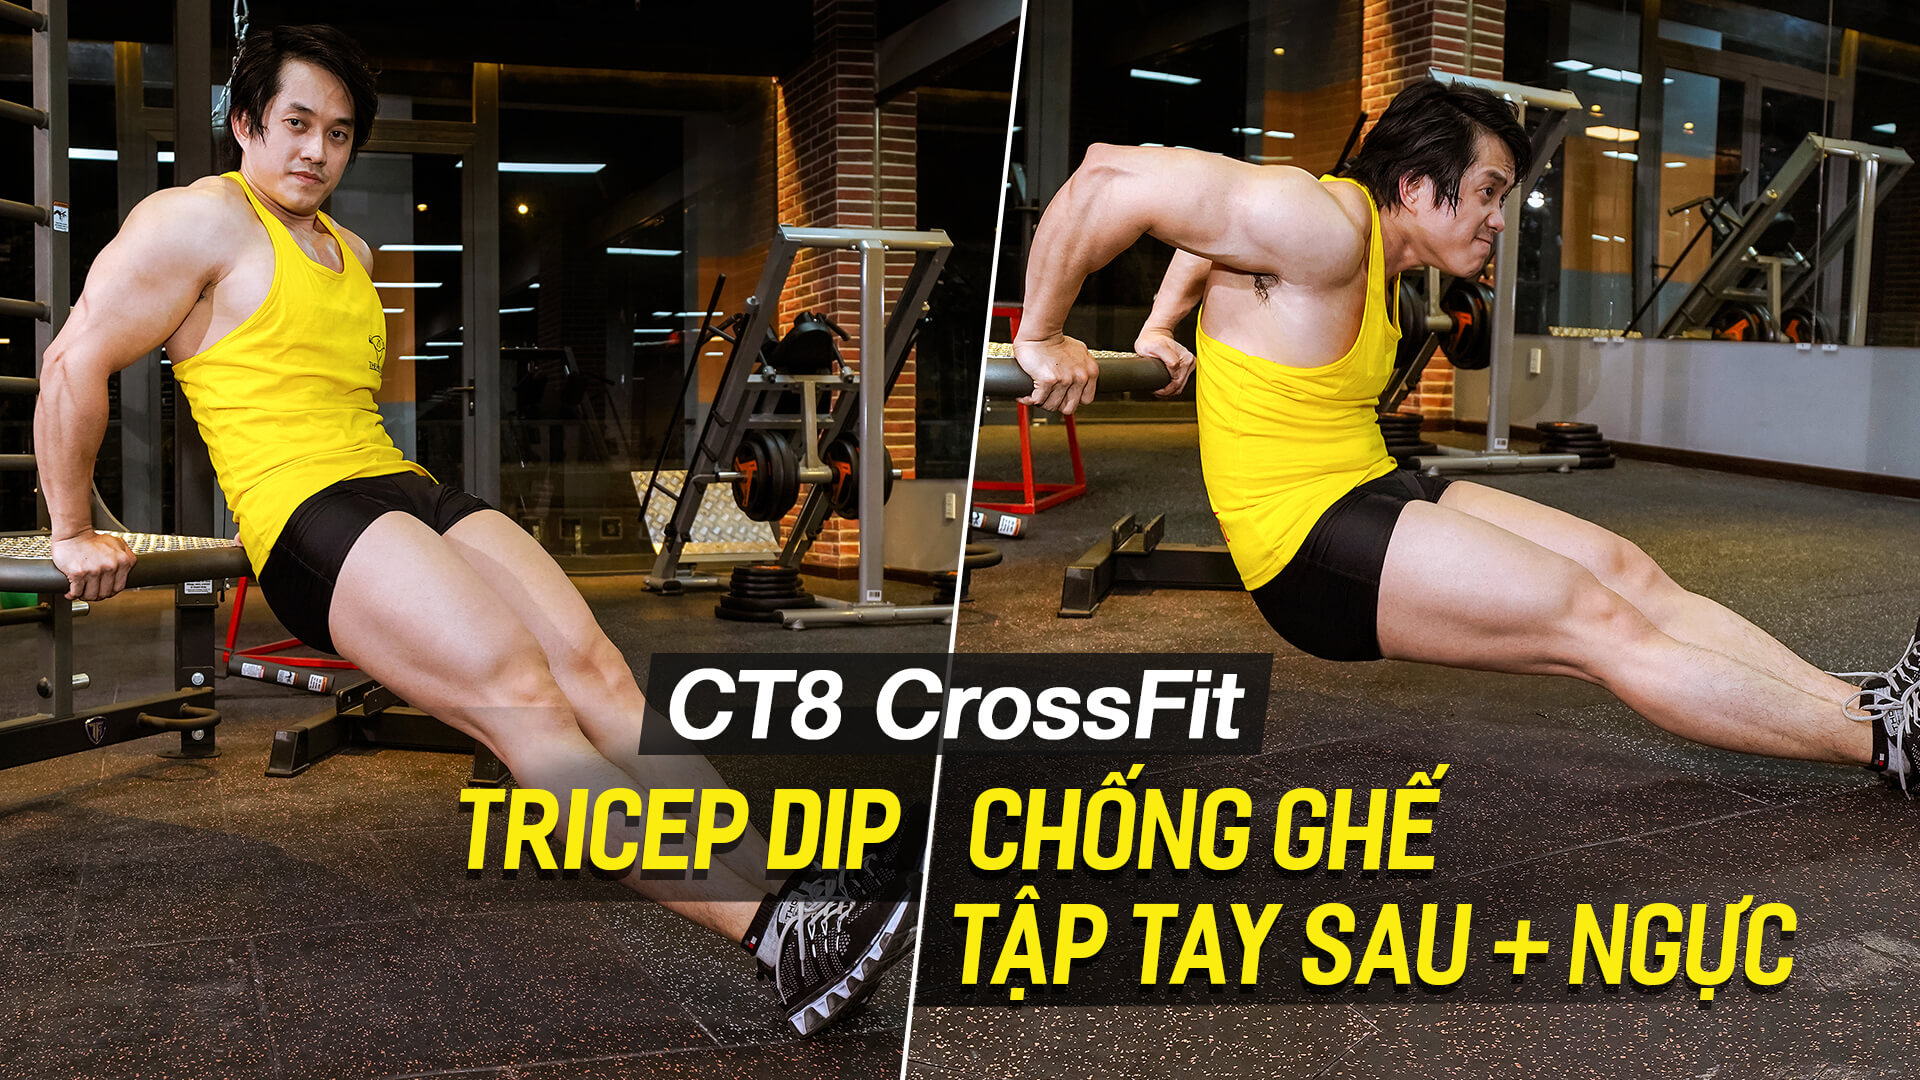 Triceps Dip - Hướng dẫn tập tay sau săn chắc, ngực cắt nét trên máy CT8 